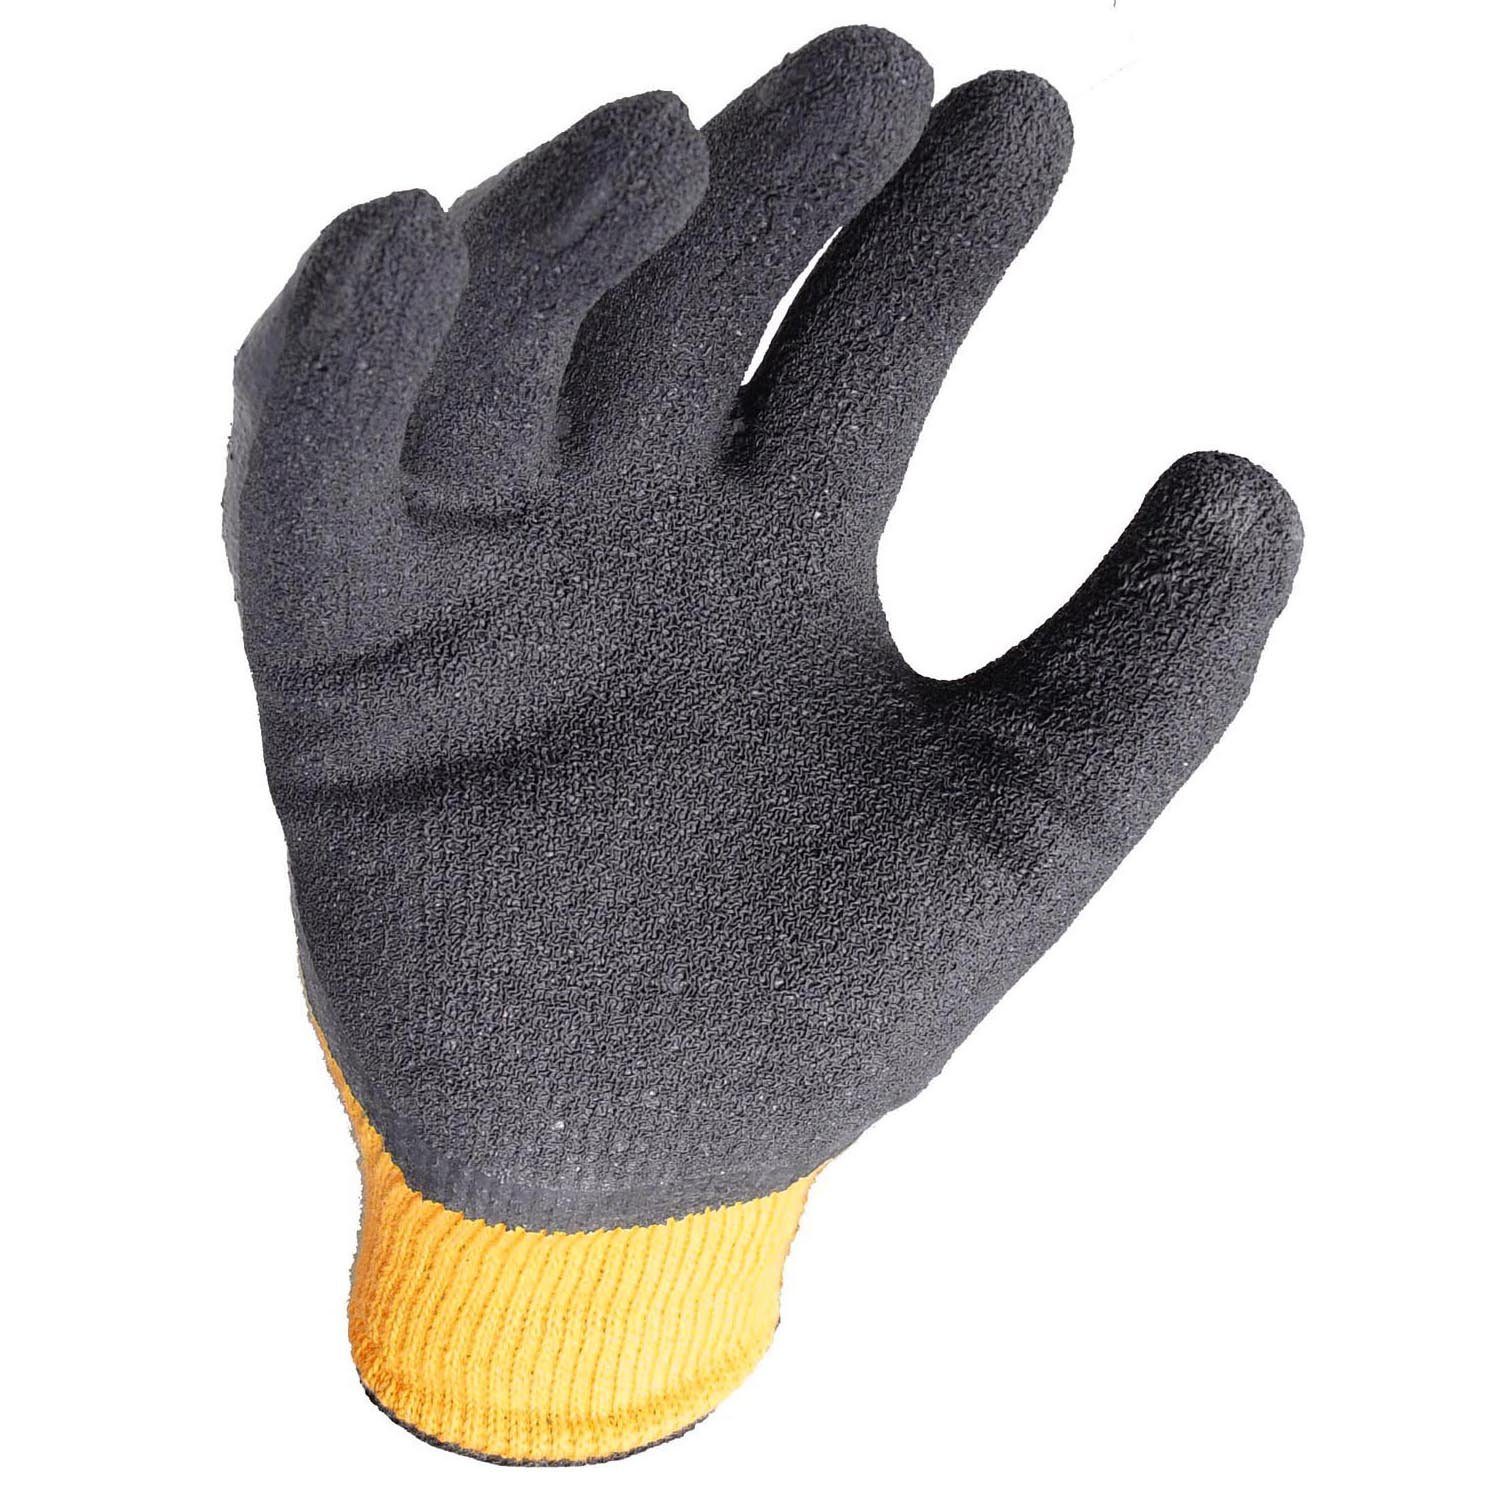 L (Nr. Gartenhandschuh, strukturierte Schutzhandschuhe, 10) Latex-Beschichtung Montage-Handschuhe Arbeitshandschuh Arbeitsschutz DPG70LEU DeWalt Arbeitshandschuh,